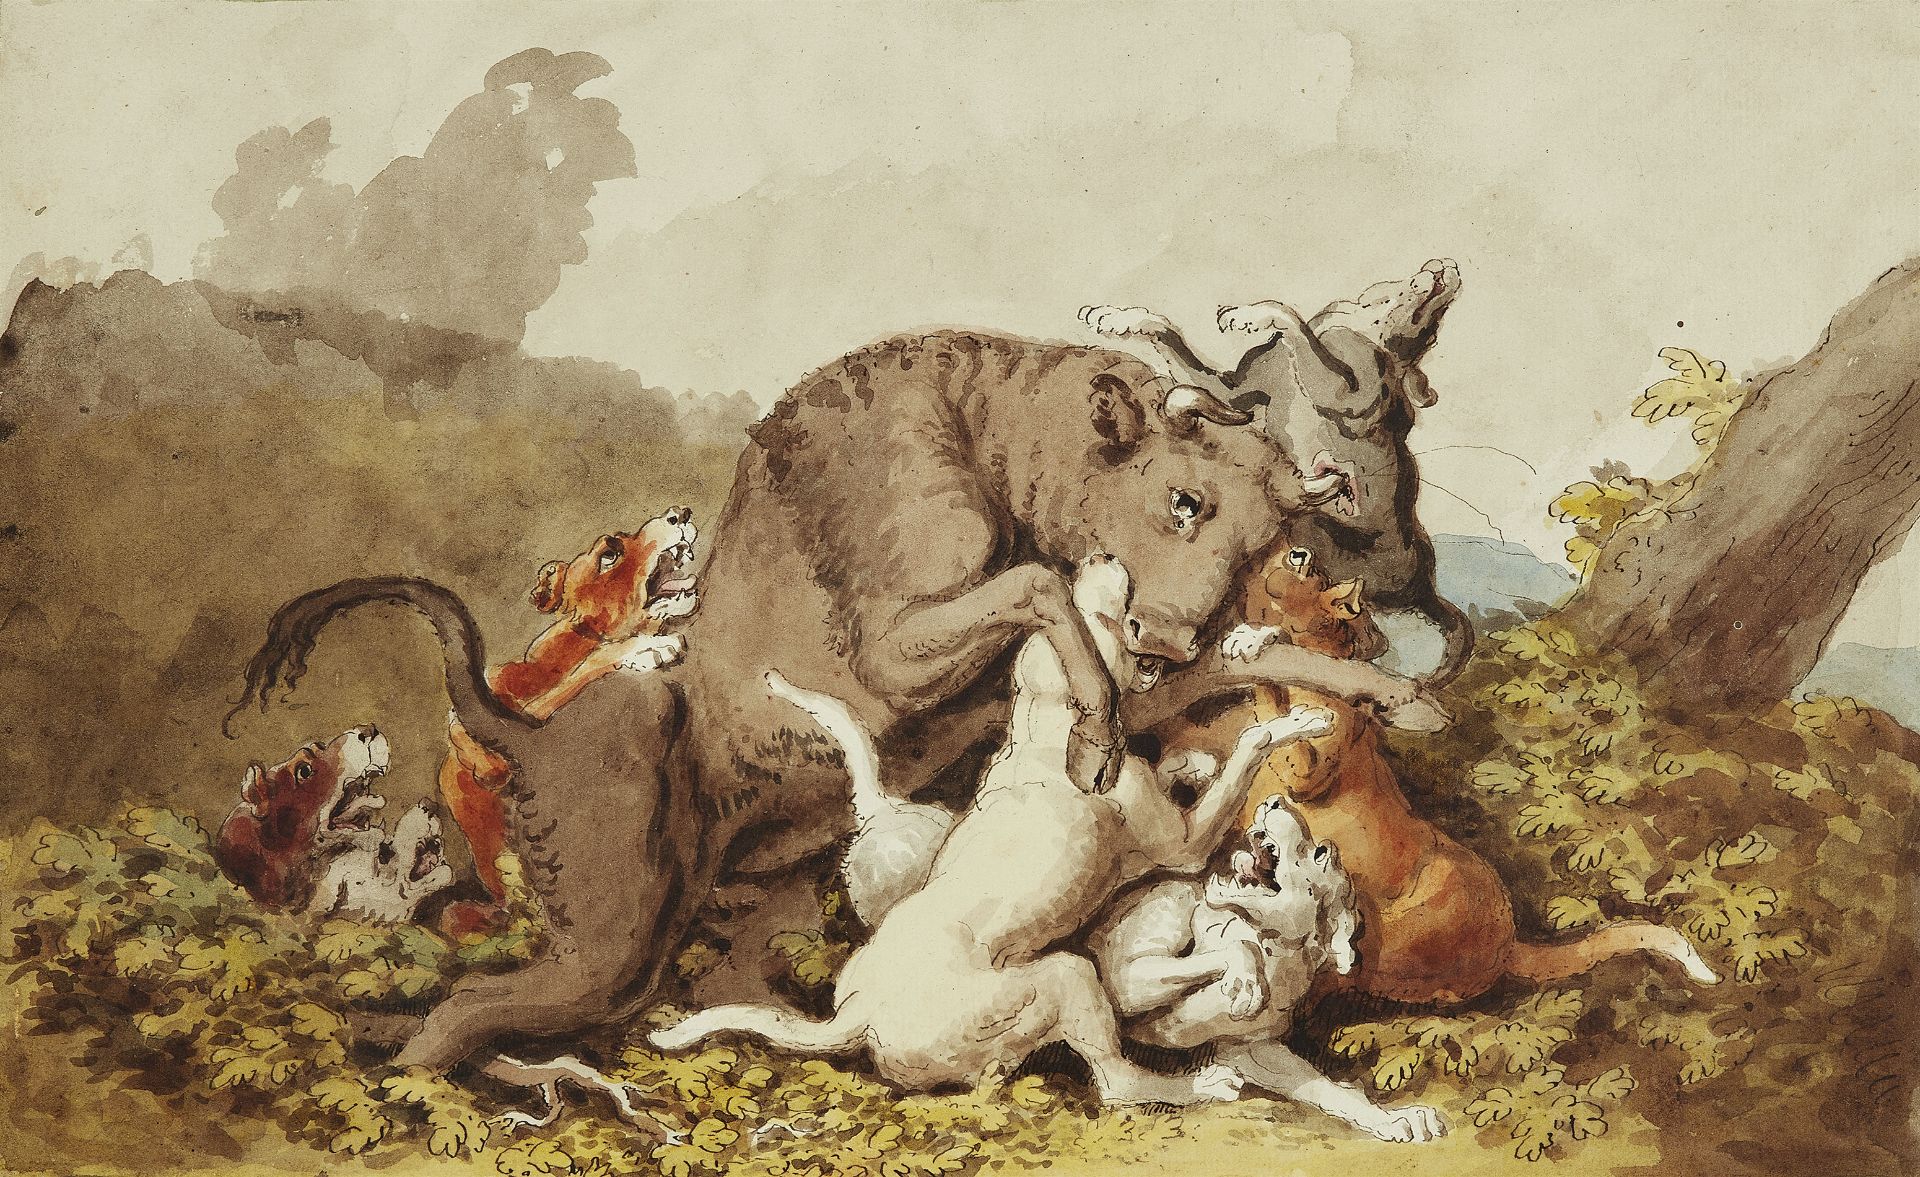 Johann Heinrich Wilhelm Tischbein, Hunting Dogs attacking a Bull